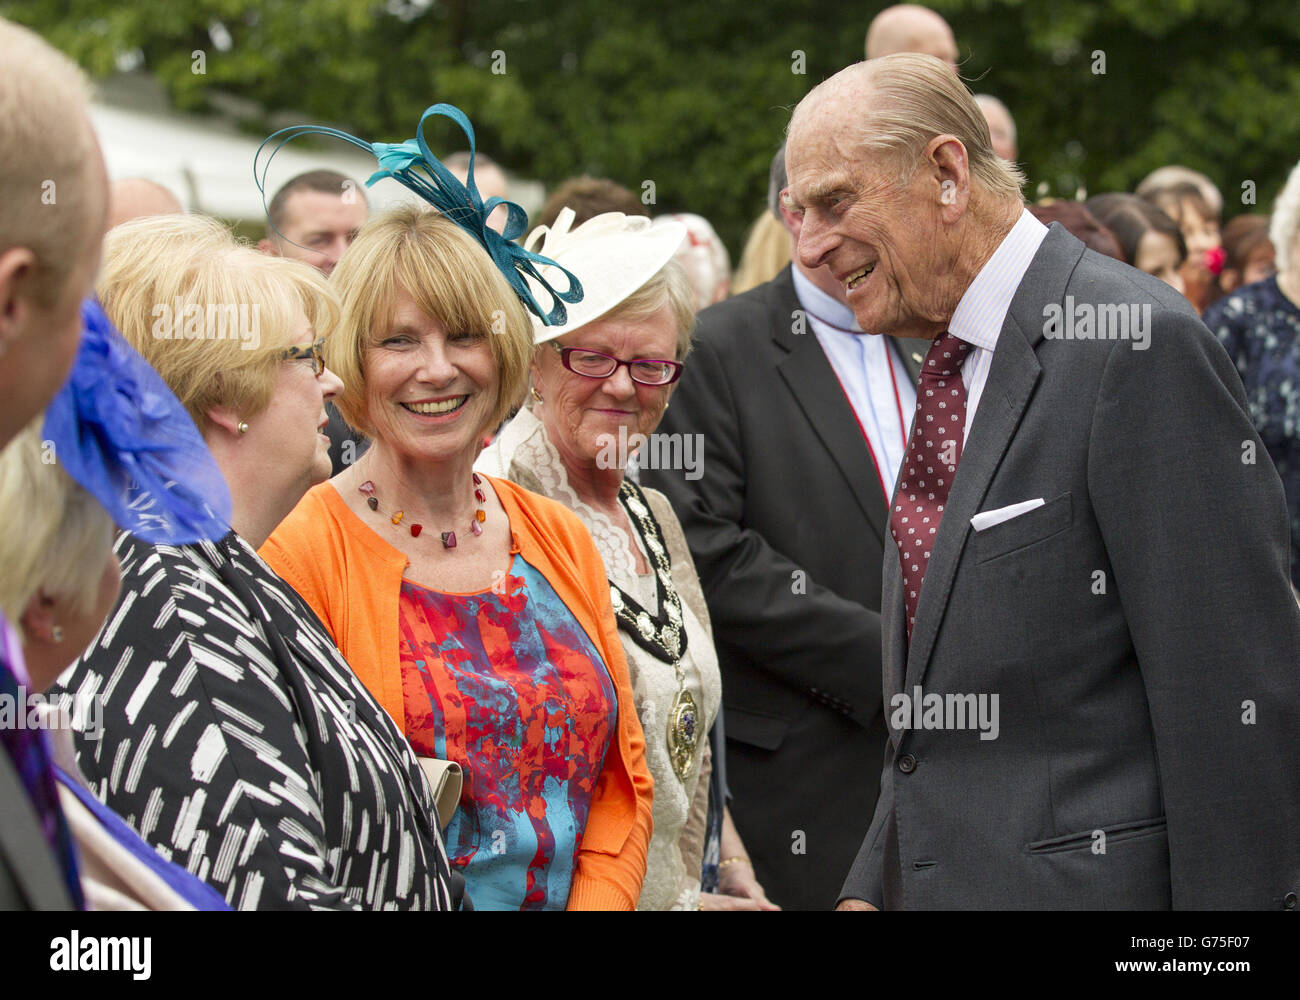 El Duque de Edimburgo se reúne con los huéspedes durante una fiesta en el jardín que se celebra en el Castillo de Hillsborough, el segundo día de su visita a Irlanda del Norte. Foto de stock